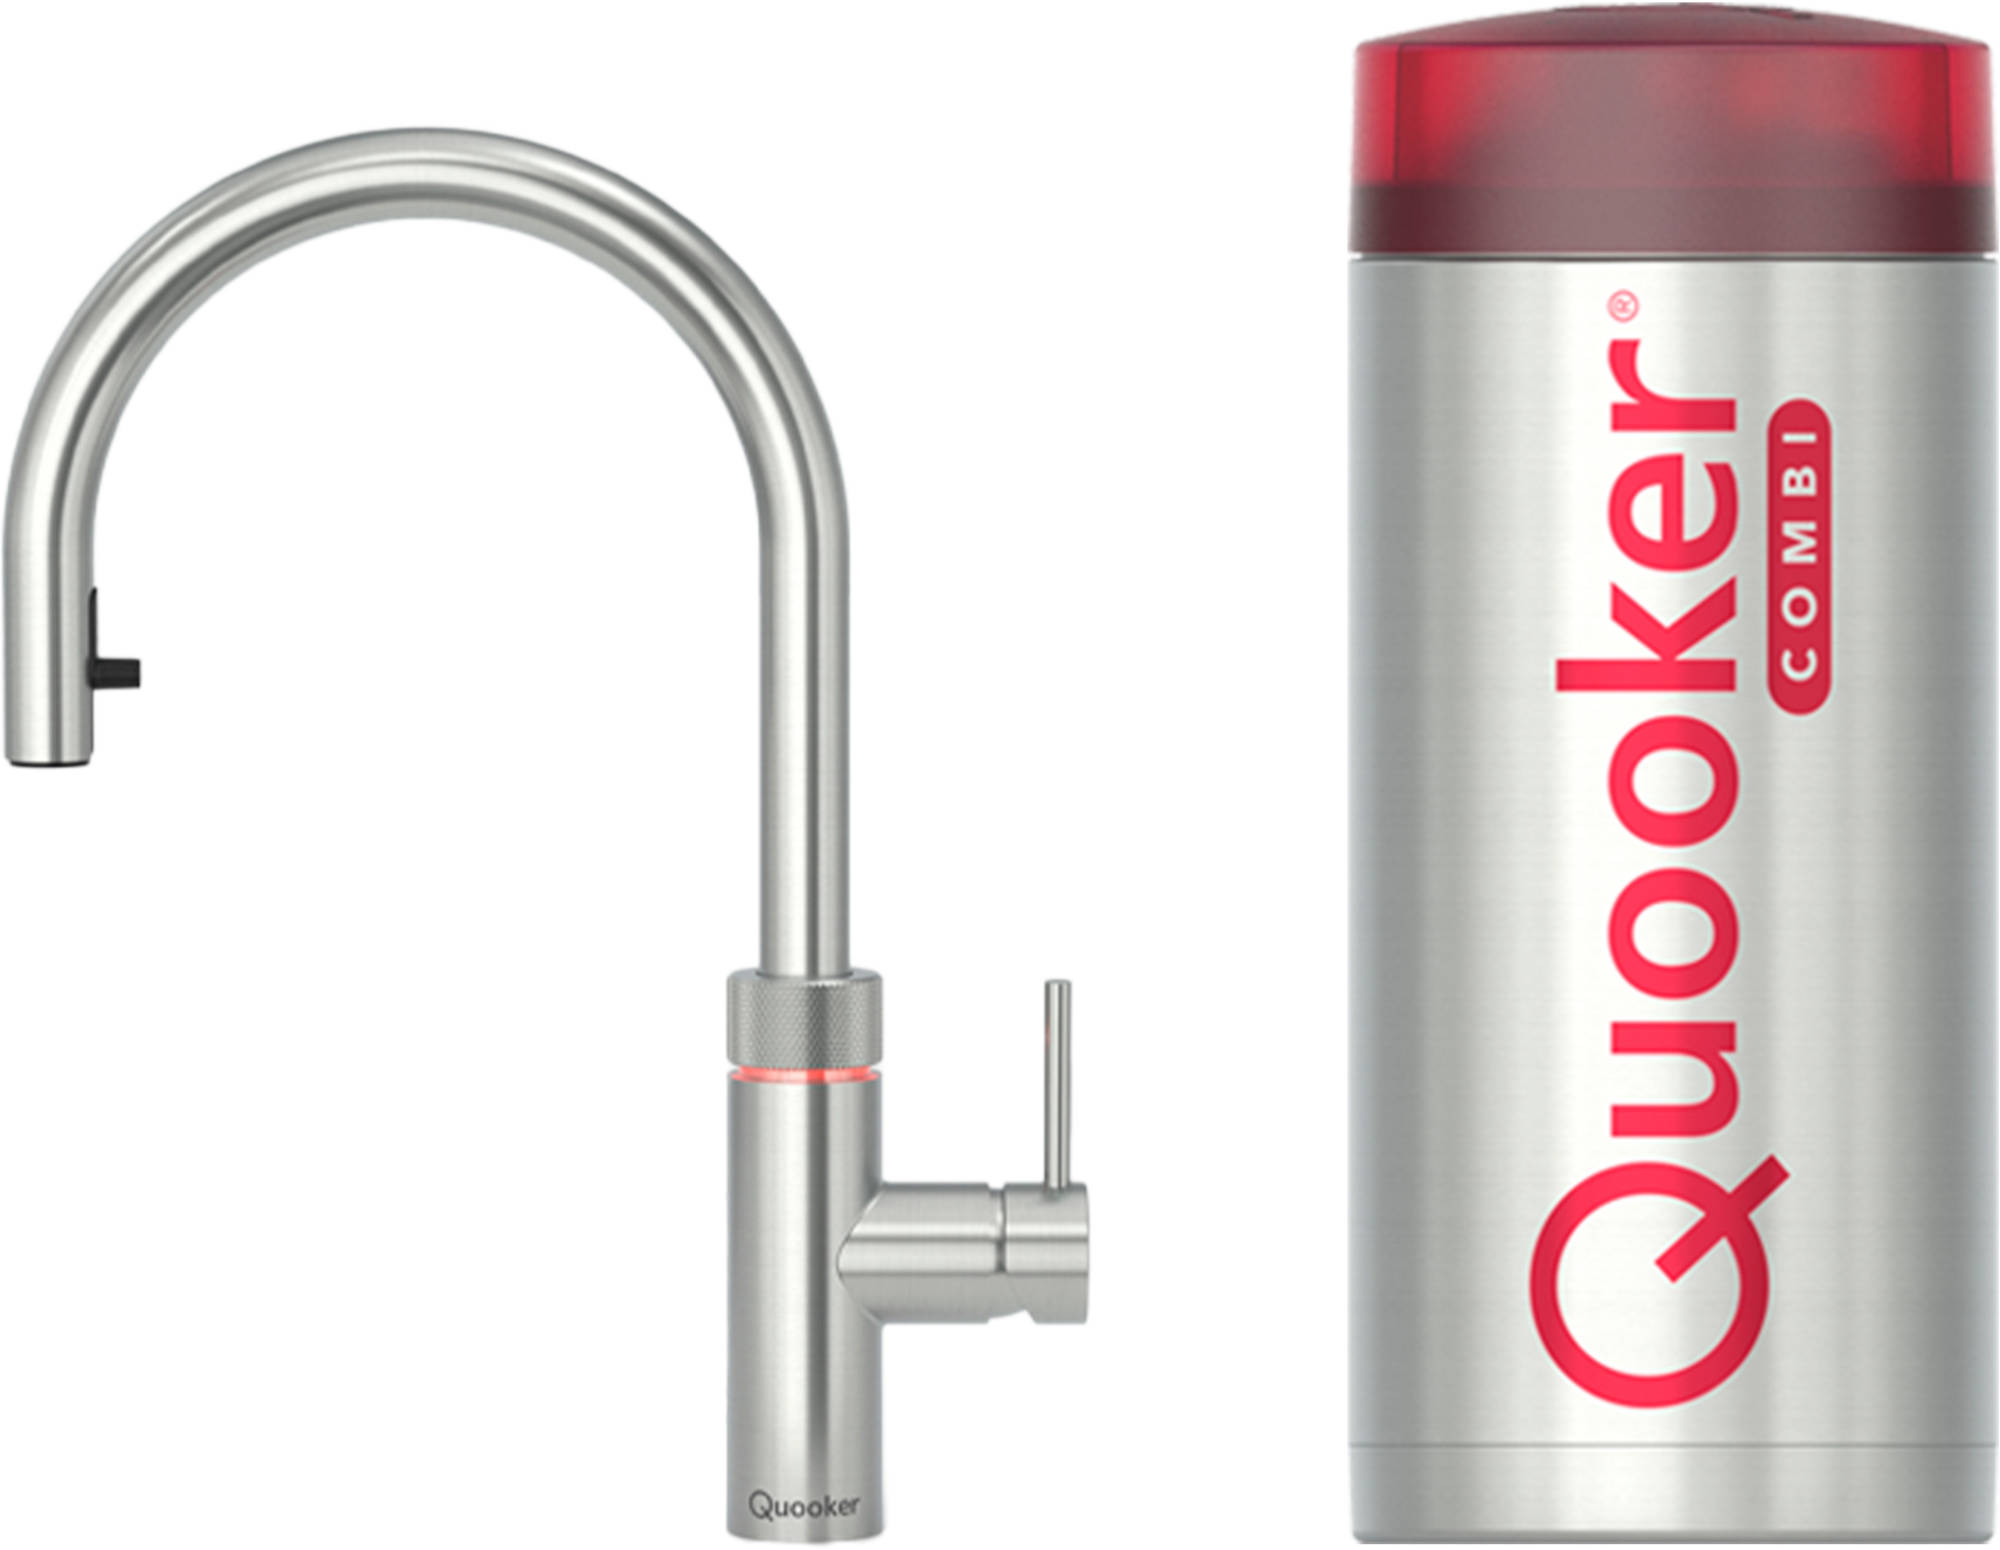 Quooker Flex met COMBI boiler 3-in-1 kokend water kraan - Saniweb.nl